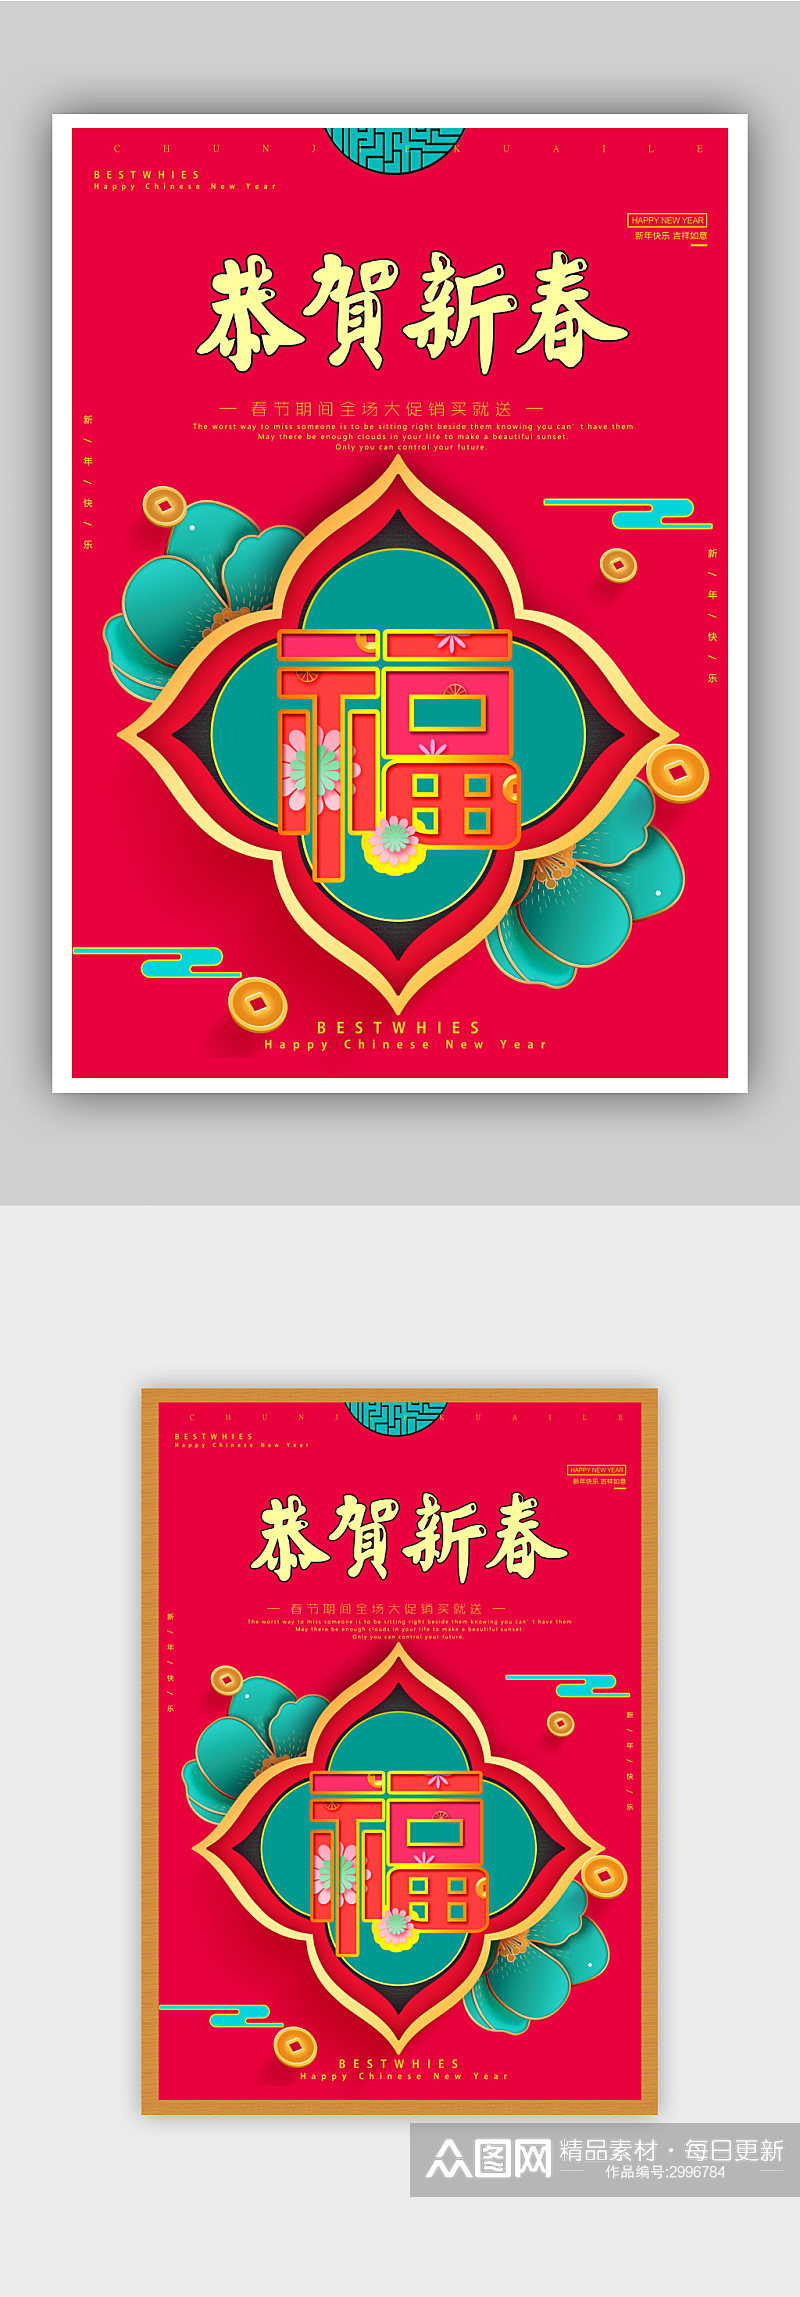 中国传统节日春节促销海报素材